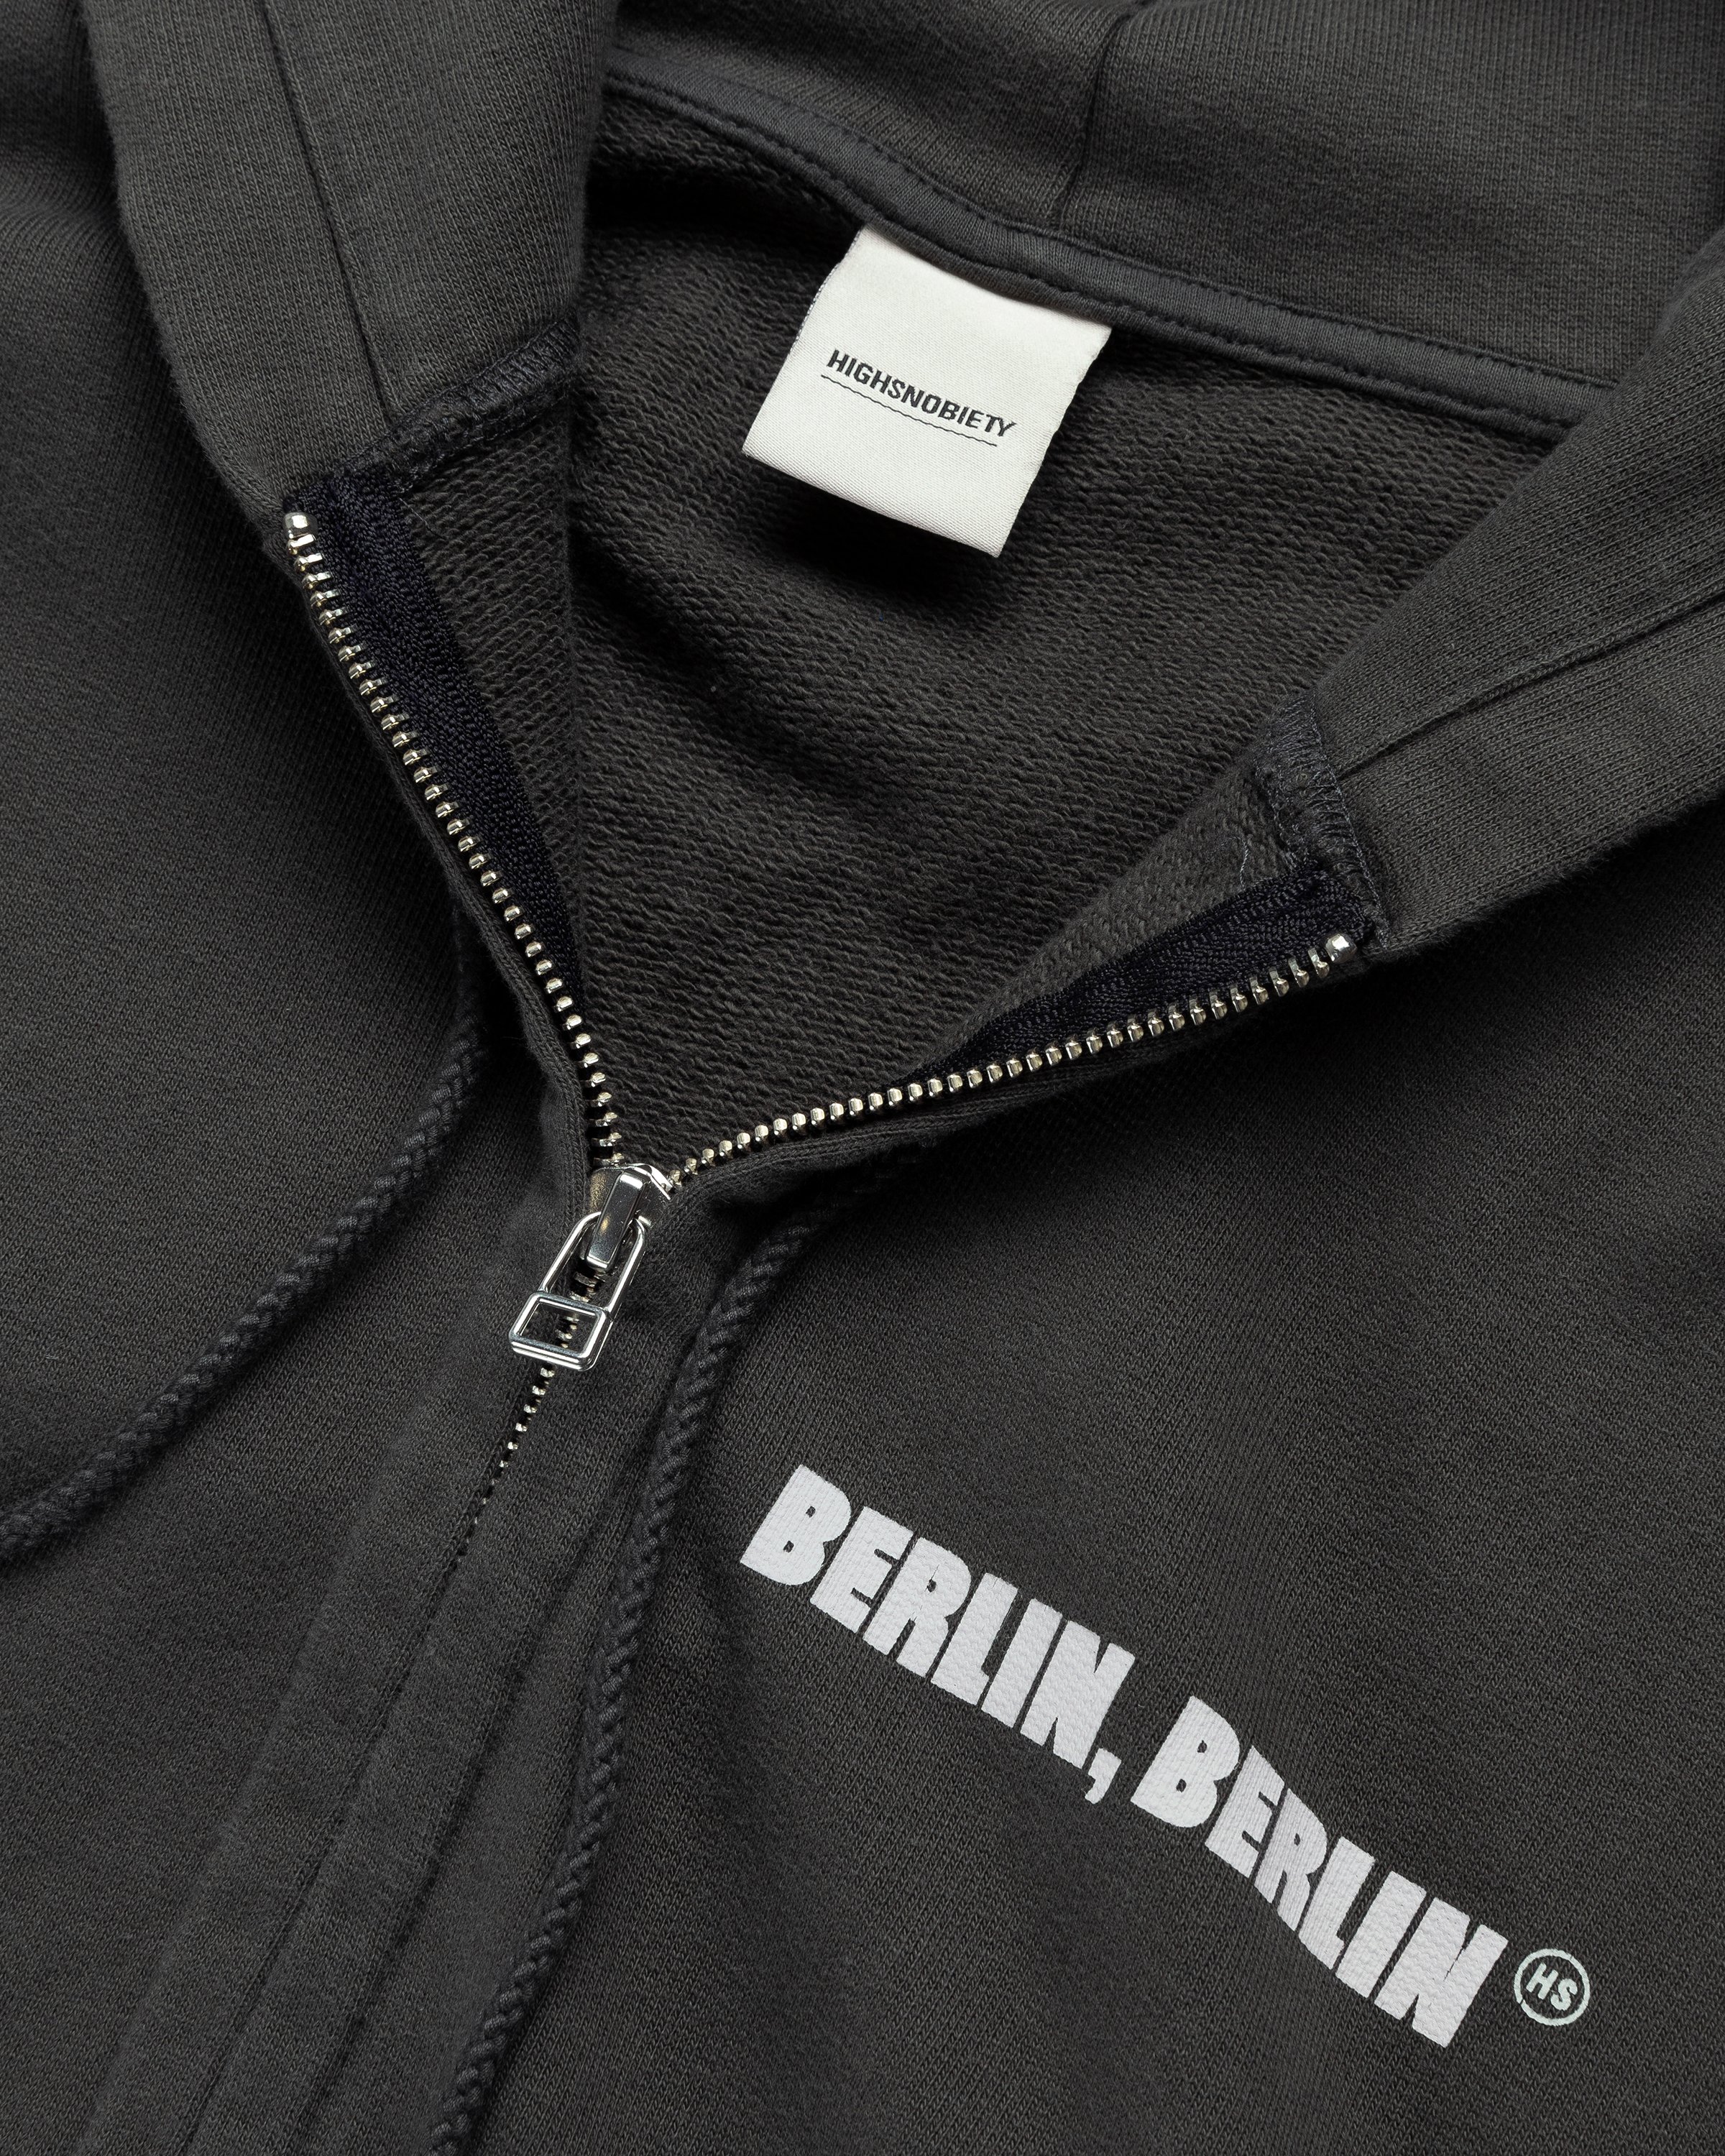 Highsnobiety - BERLIN, BERLIN 3 Zip Hoodie Black - Clothing - Black - Image 6